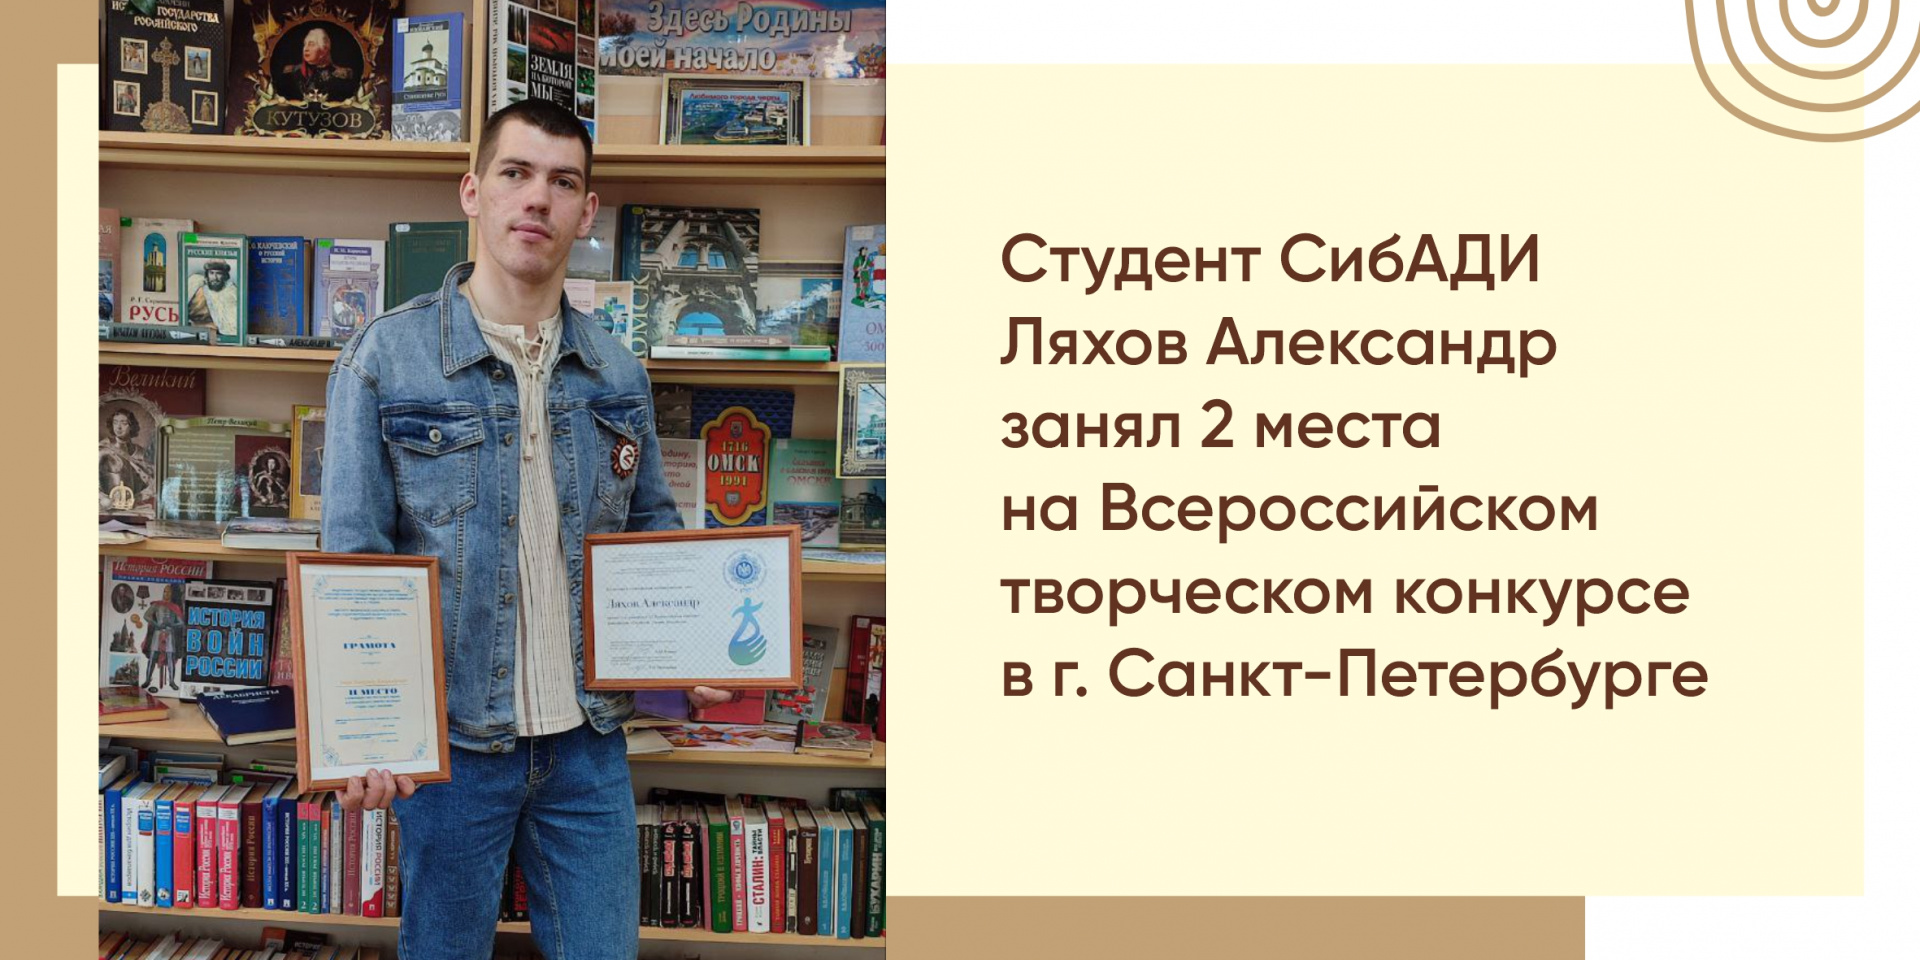 Студент СибАДИ Ляхов Александр удостоен 2 места на Всероссийском творческом конкурсе в г. Санкт-Петербурге 